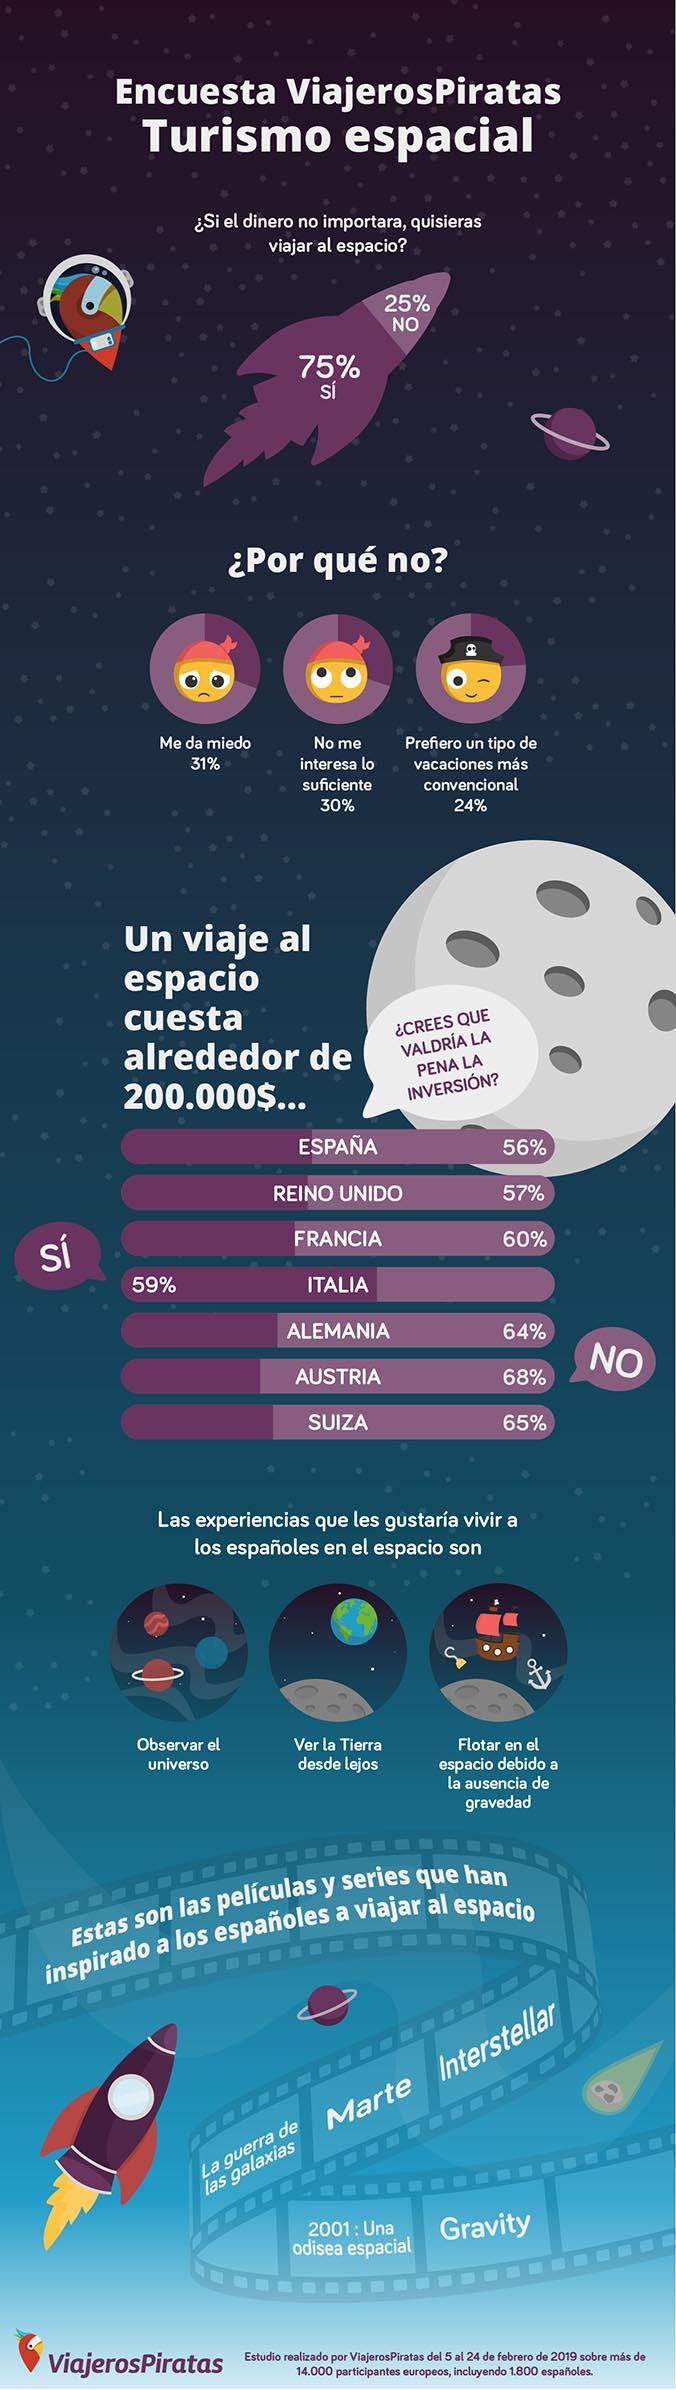 Infografía sobre turismo espacial / VIAJEROSPIRATAS